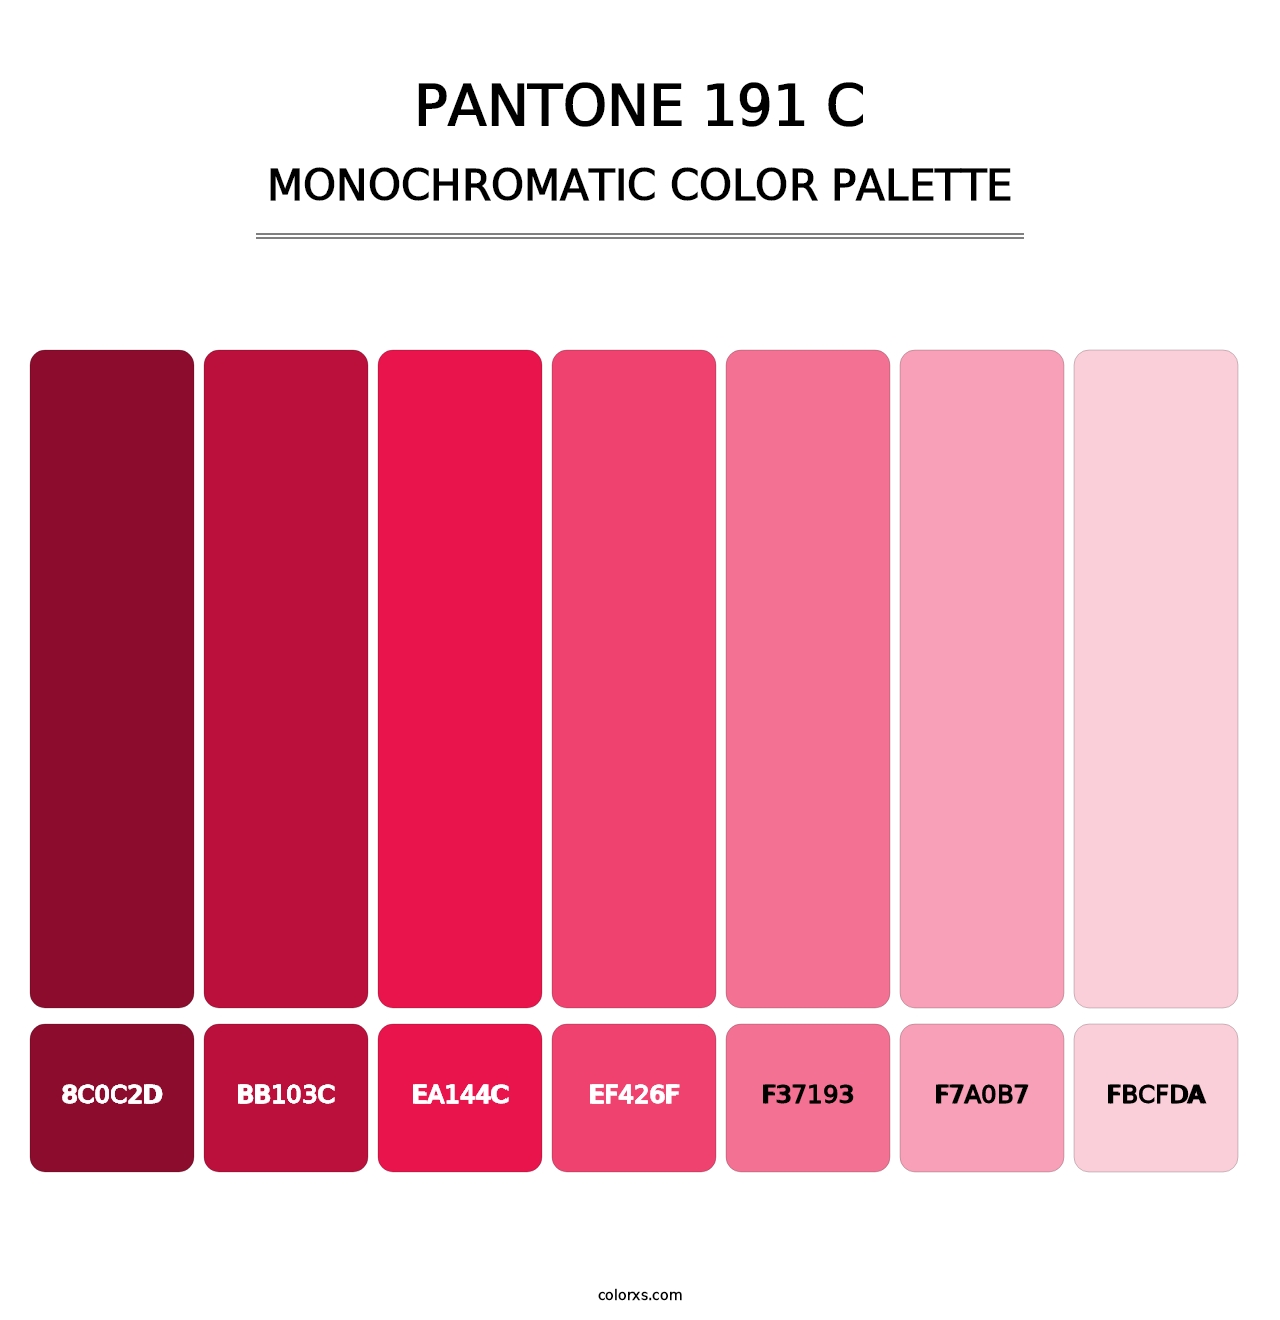 PANTONE 191 C - Monochromatic Color Palette